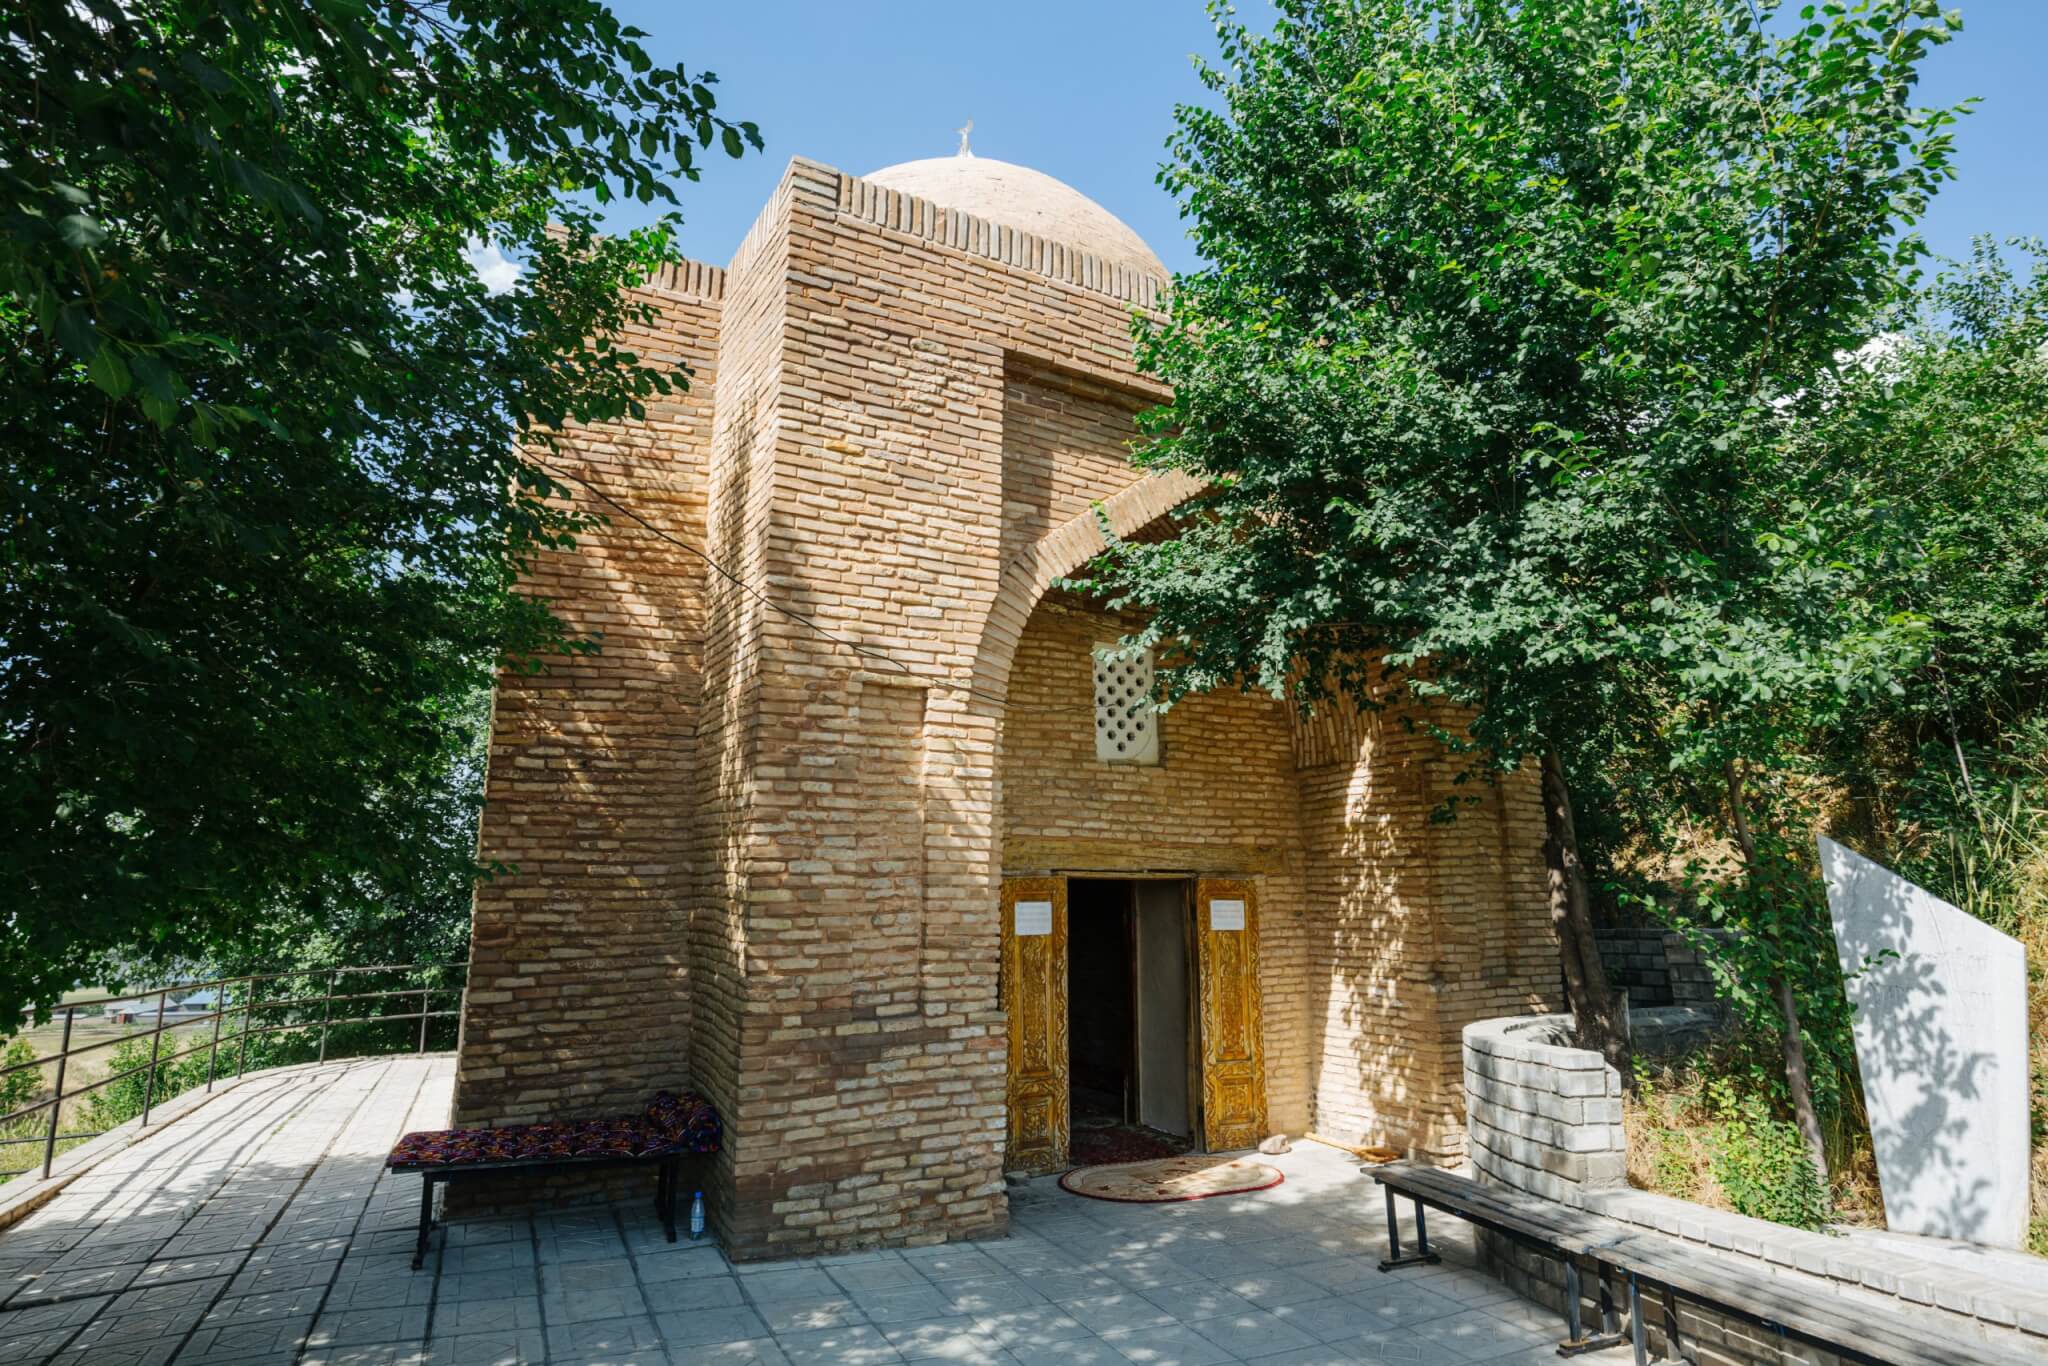 Info Shymkent - Ibragim Ata Mausoleum in Sayram, Shymkent